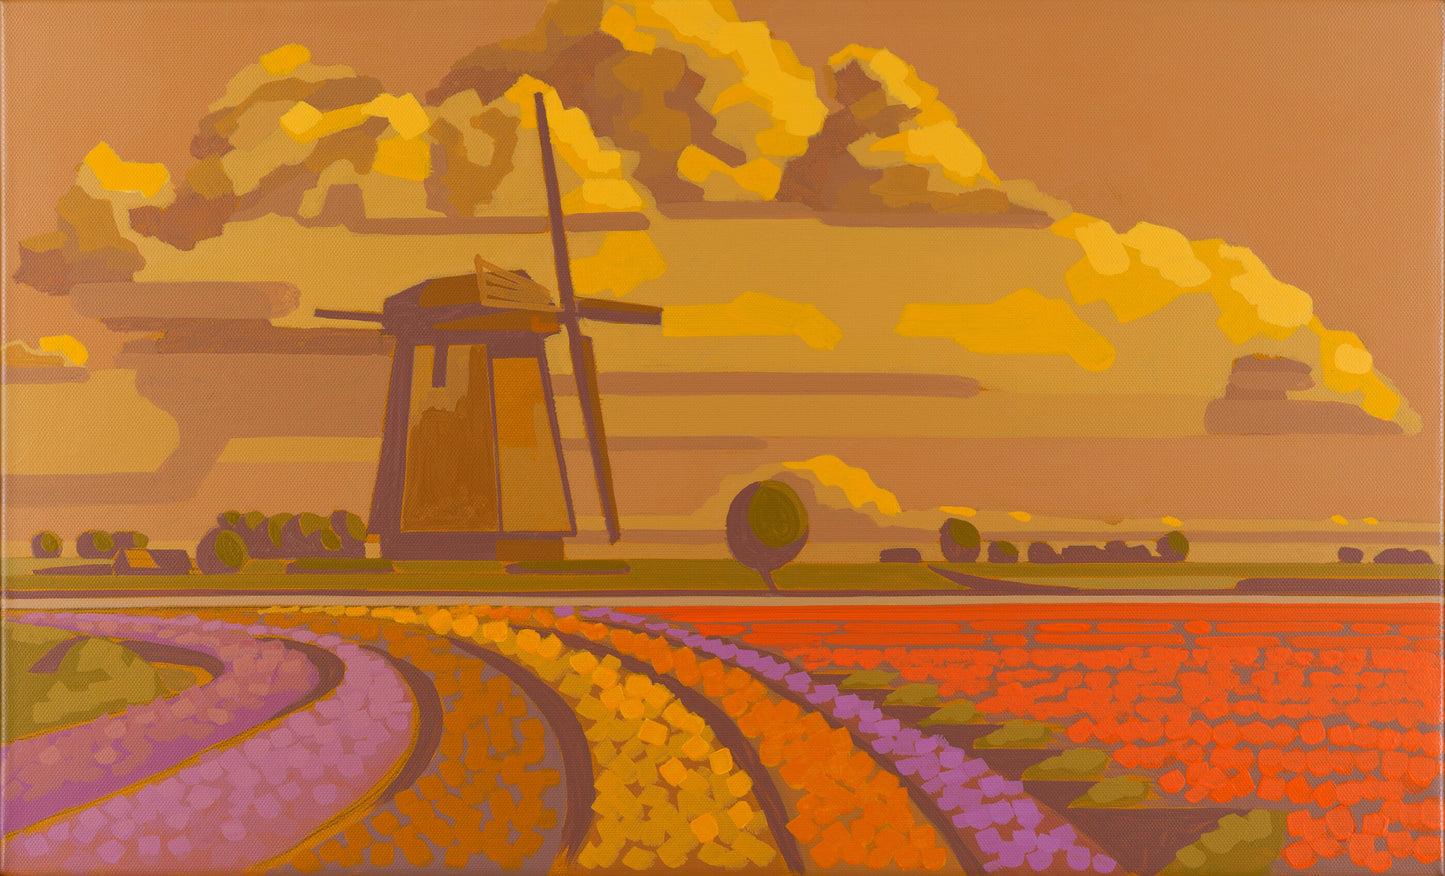 Windmill in Flower Field Landscape Wall Art Canvas Print